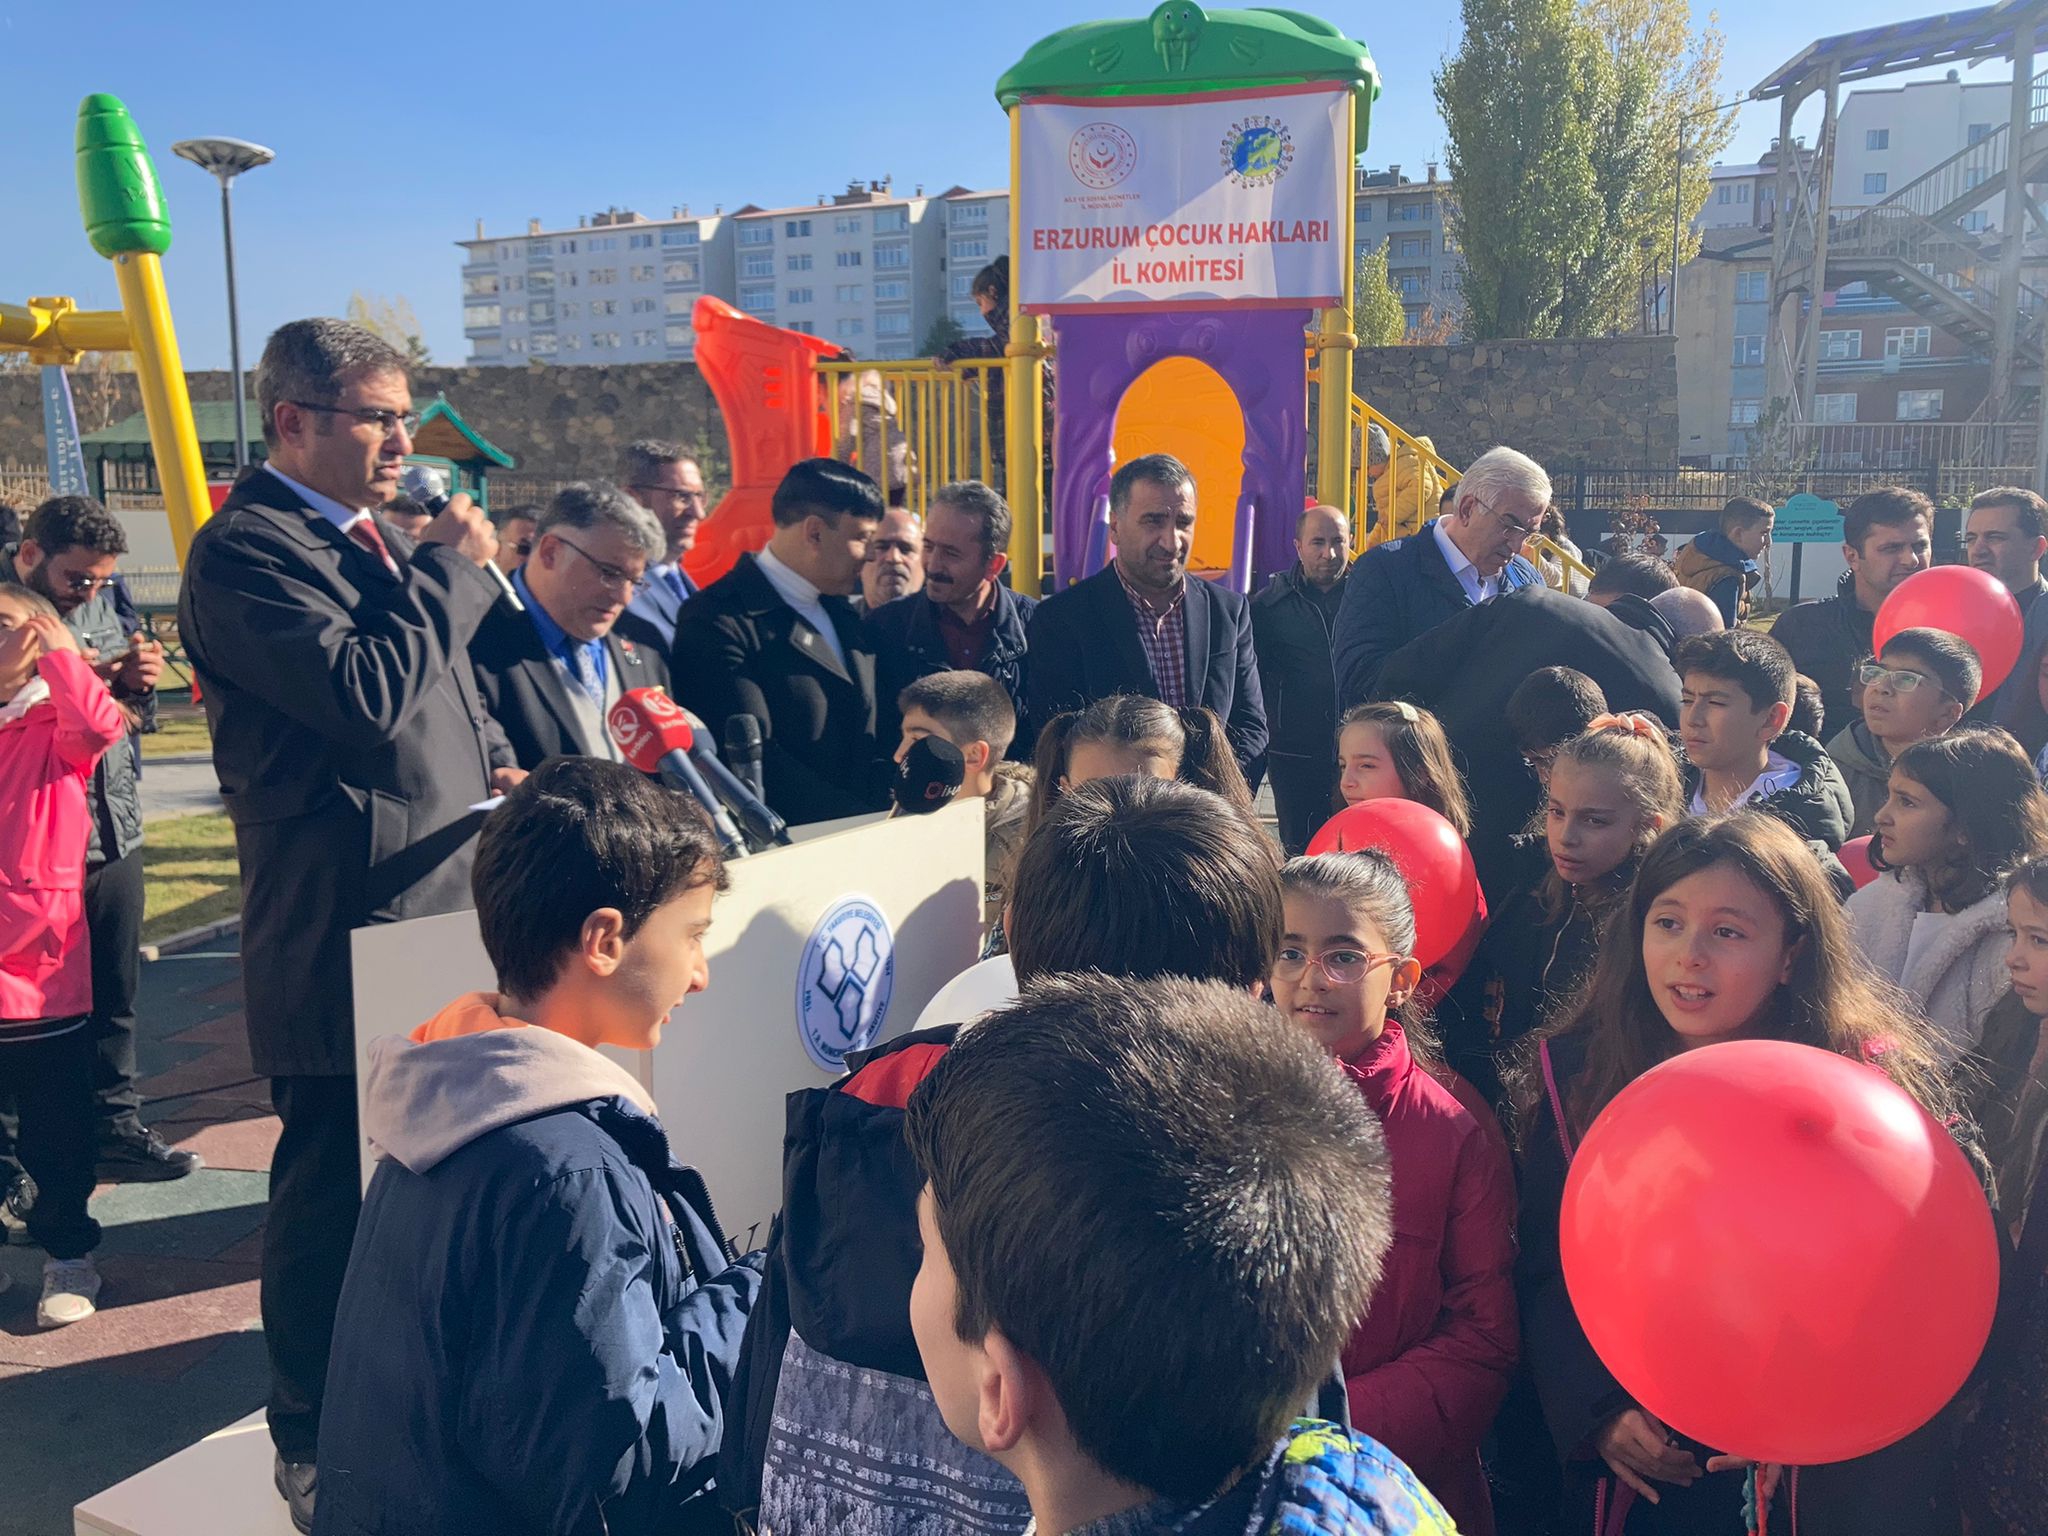 Erzurum'da Çocuk Hakları Parkı açıldı 